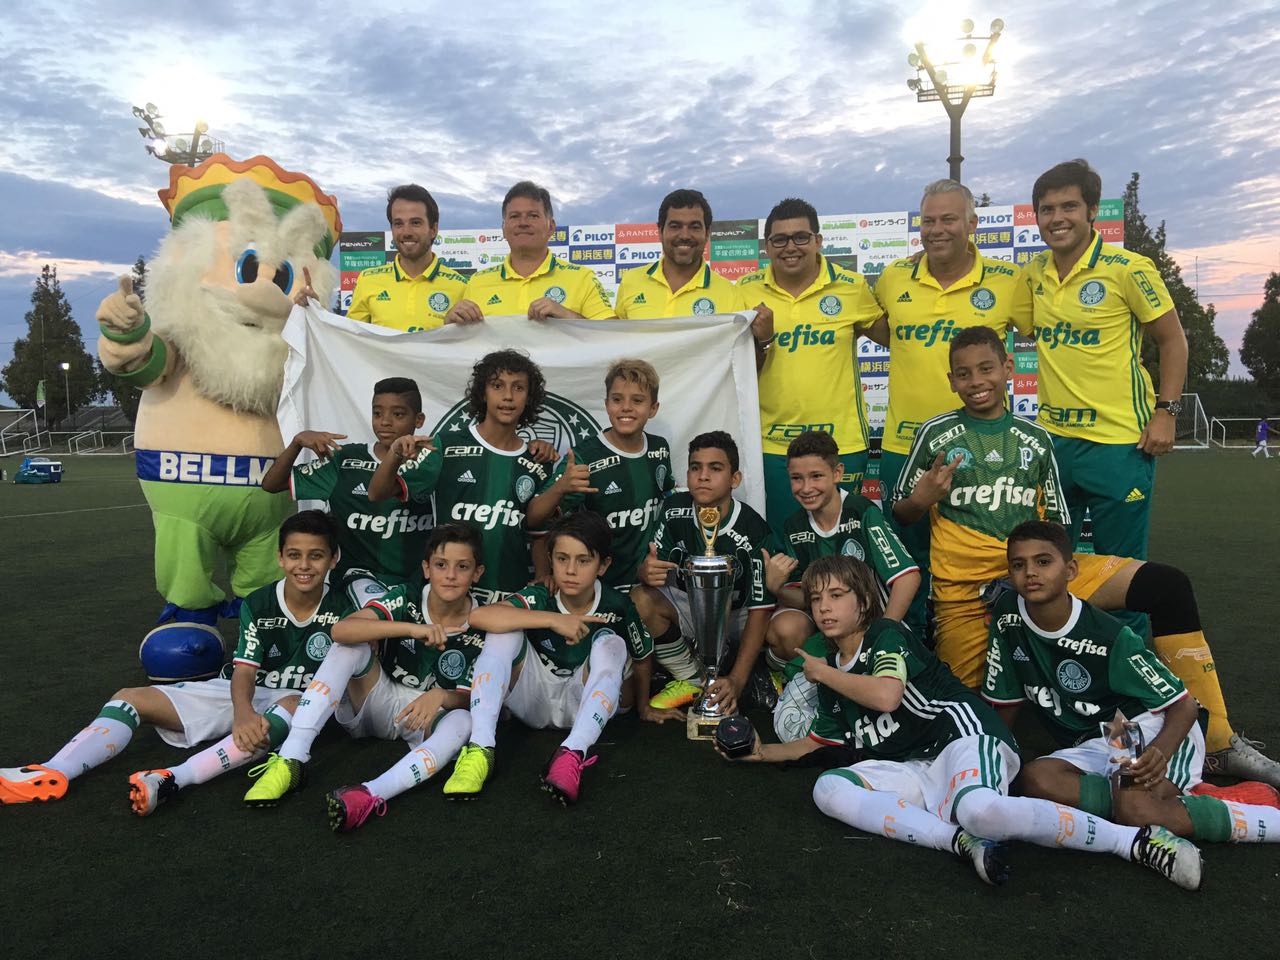 Gremistas conquistam o título Mundial Sub-17 com a Seleção Brasileira